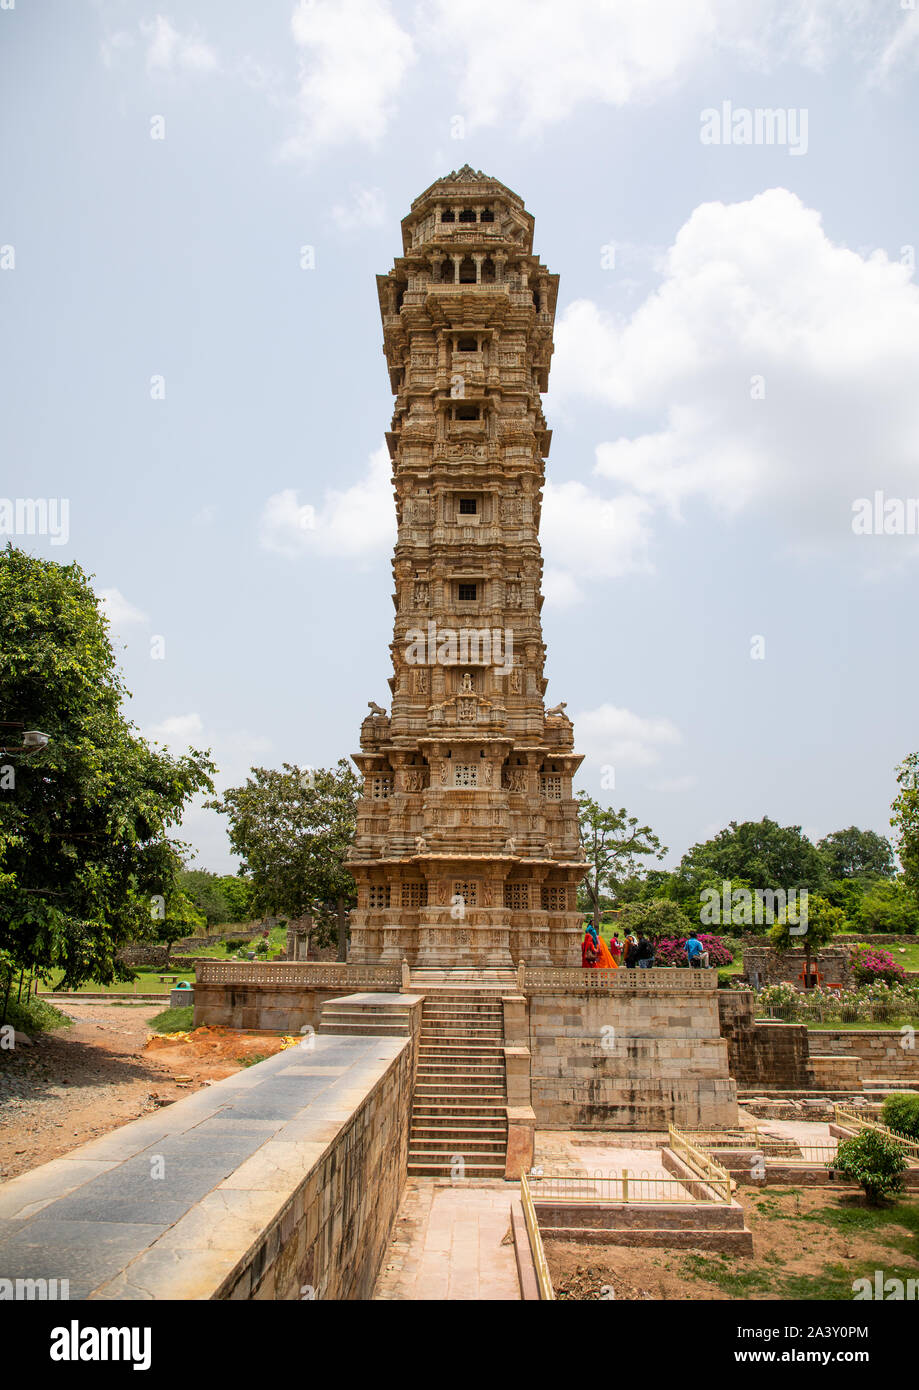 Vijaya stambha tower of victory at Chittorgarh fort, Rajasthan, Chittorgarh, India Stock Photo